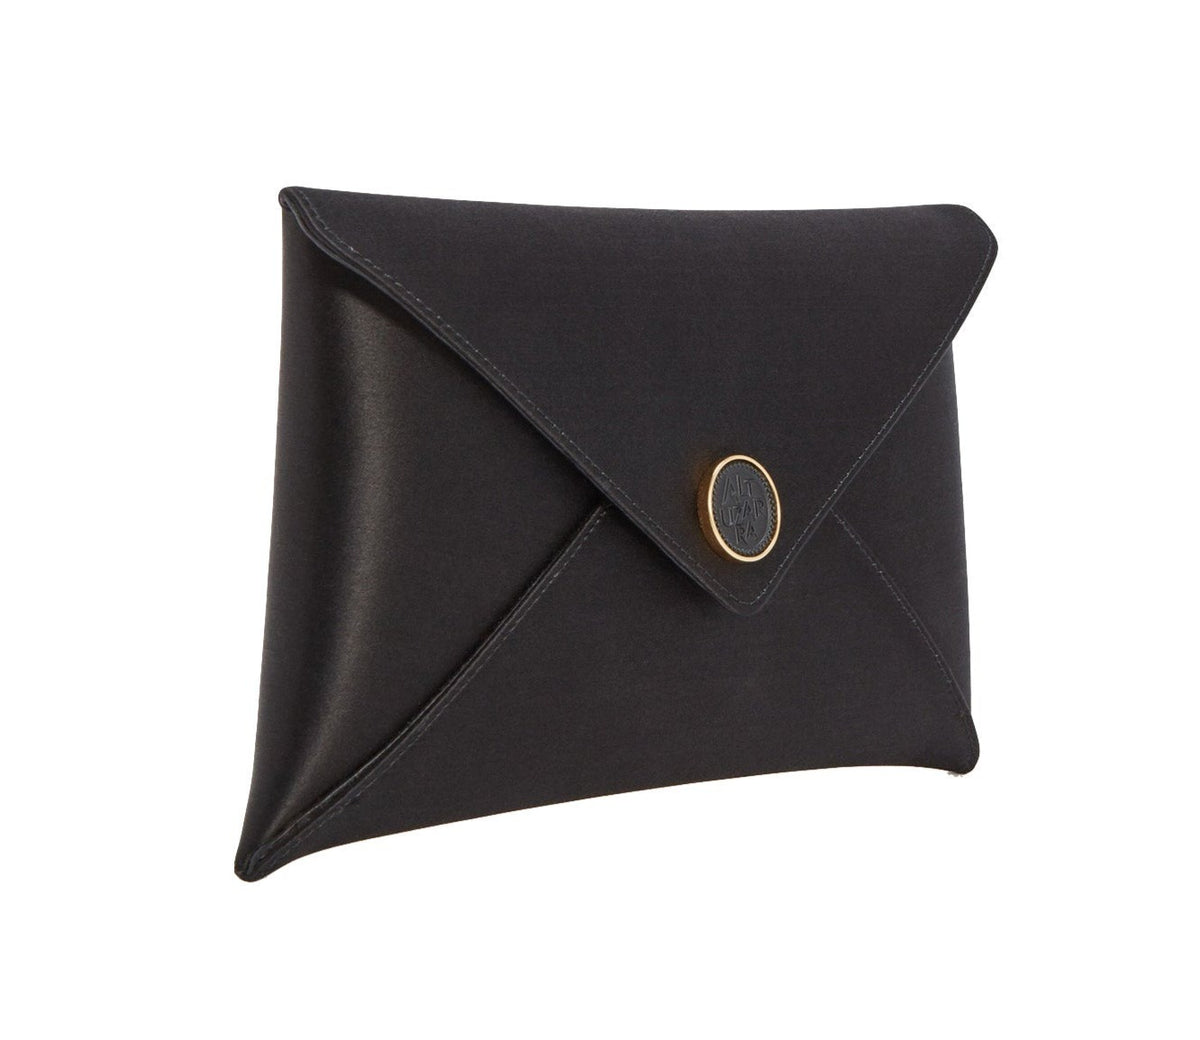 Vintage White Metal Mesh Regale Shoulder Bag Purse Envelope Clutch | eBay